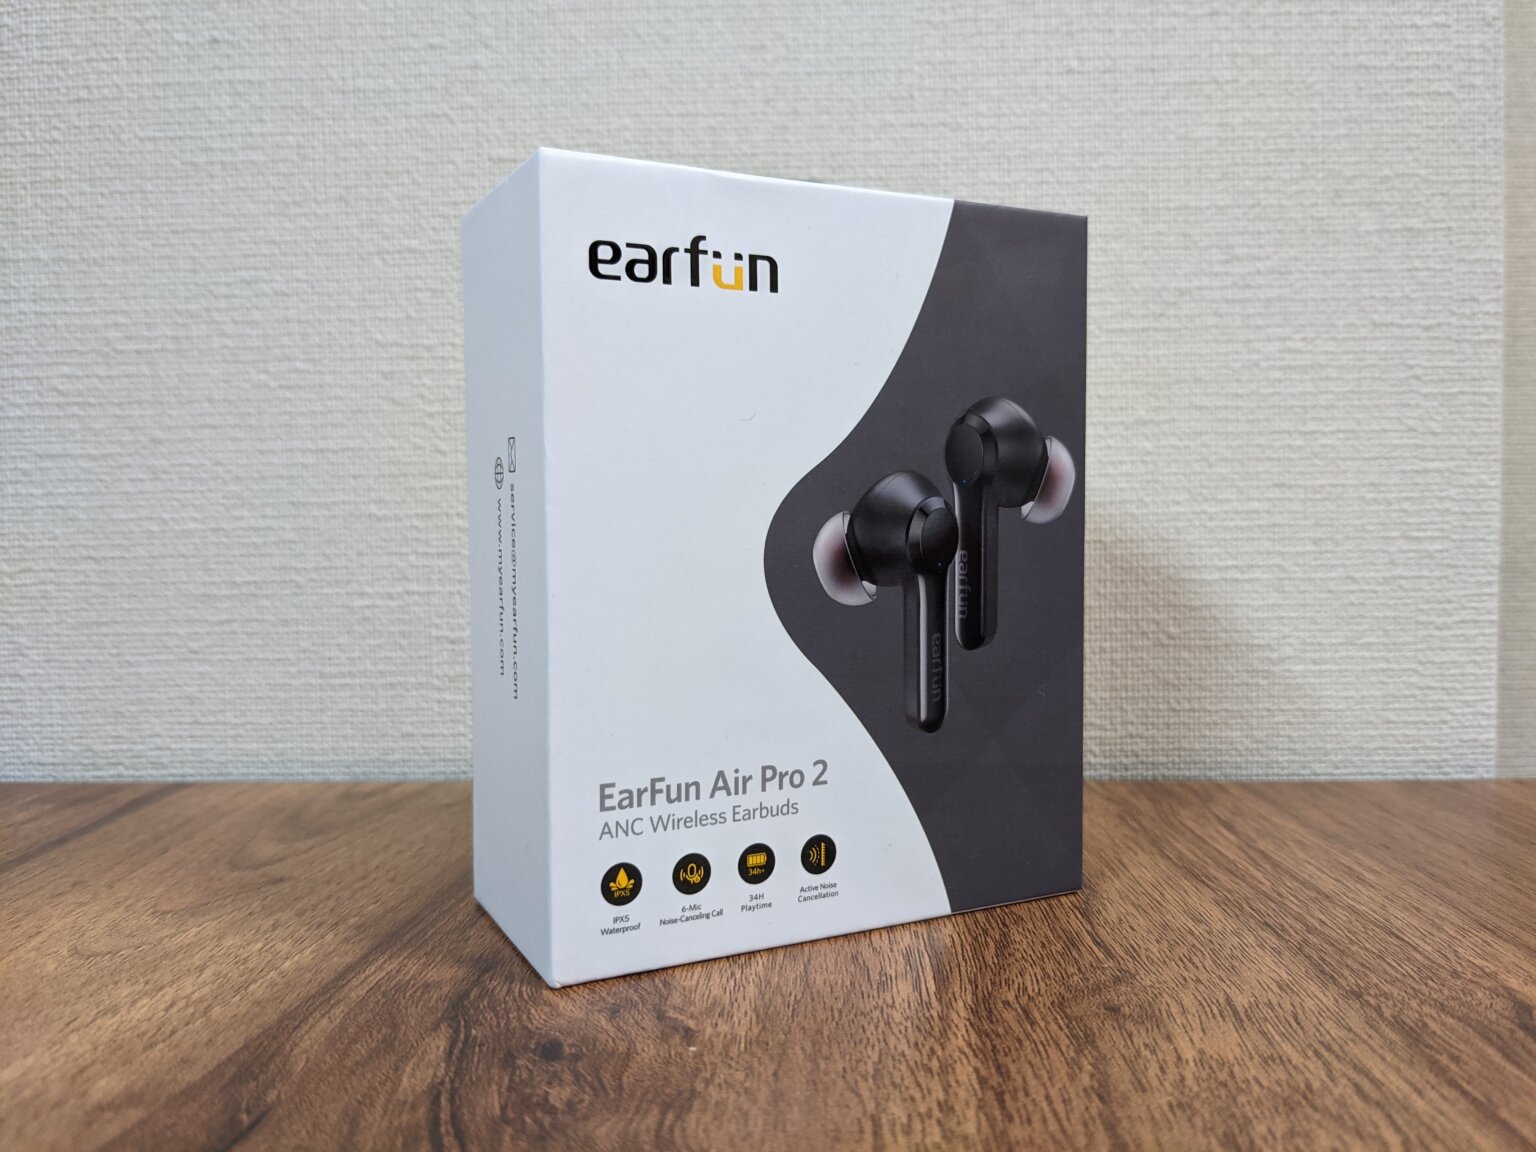 EarFun Air Pro 2レビュー | 人気機種の正当進化系。優秀だが音楽の聴き方で評価が分かれる – ガジェットレビュー「2ミニッツ」